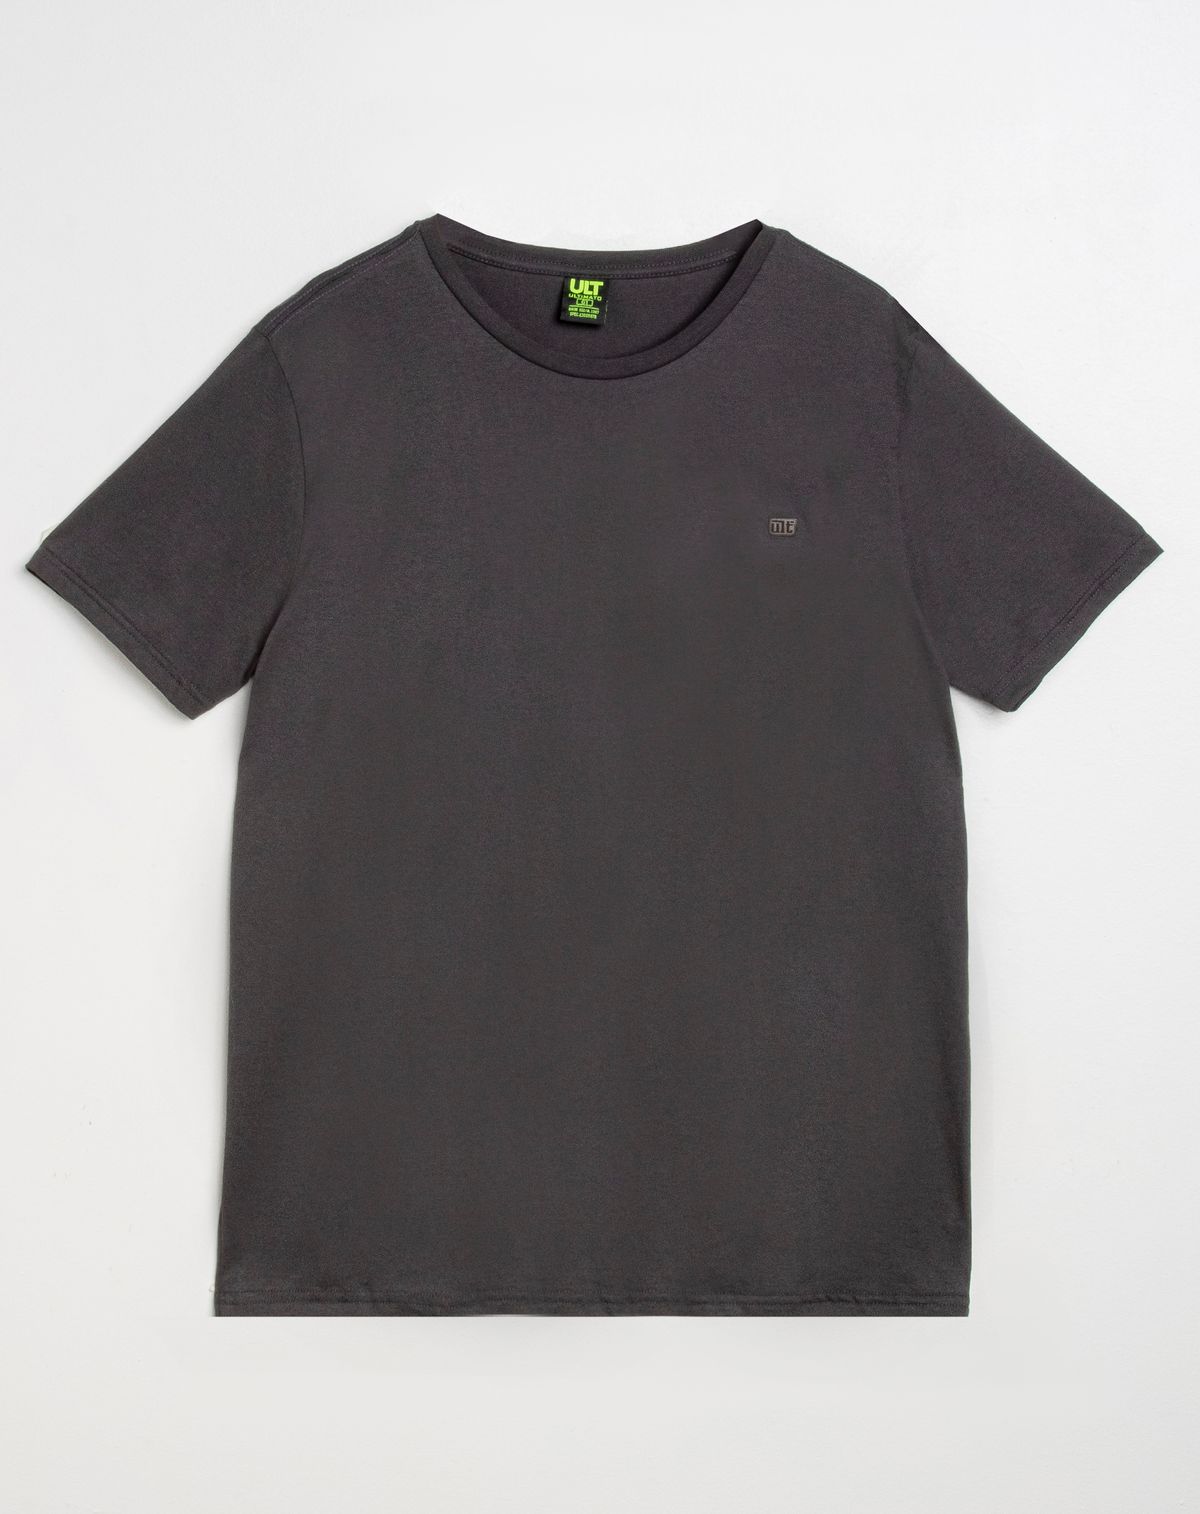 624586004-camiseta-manga-curta-plus-size-masculina-basica-chumbo-g1-494